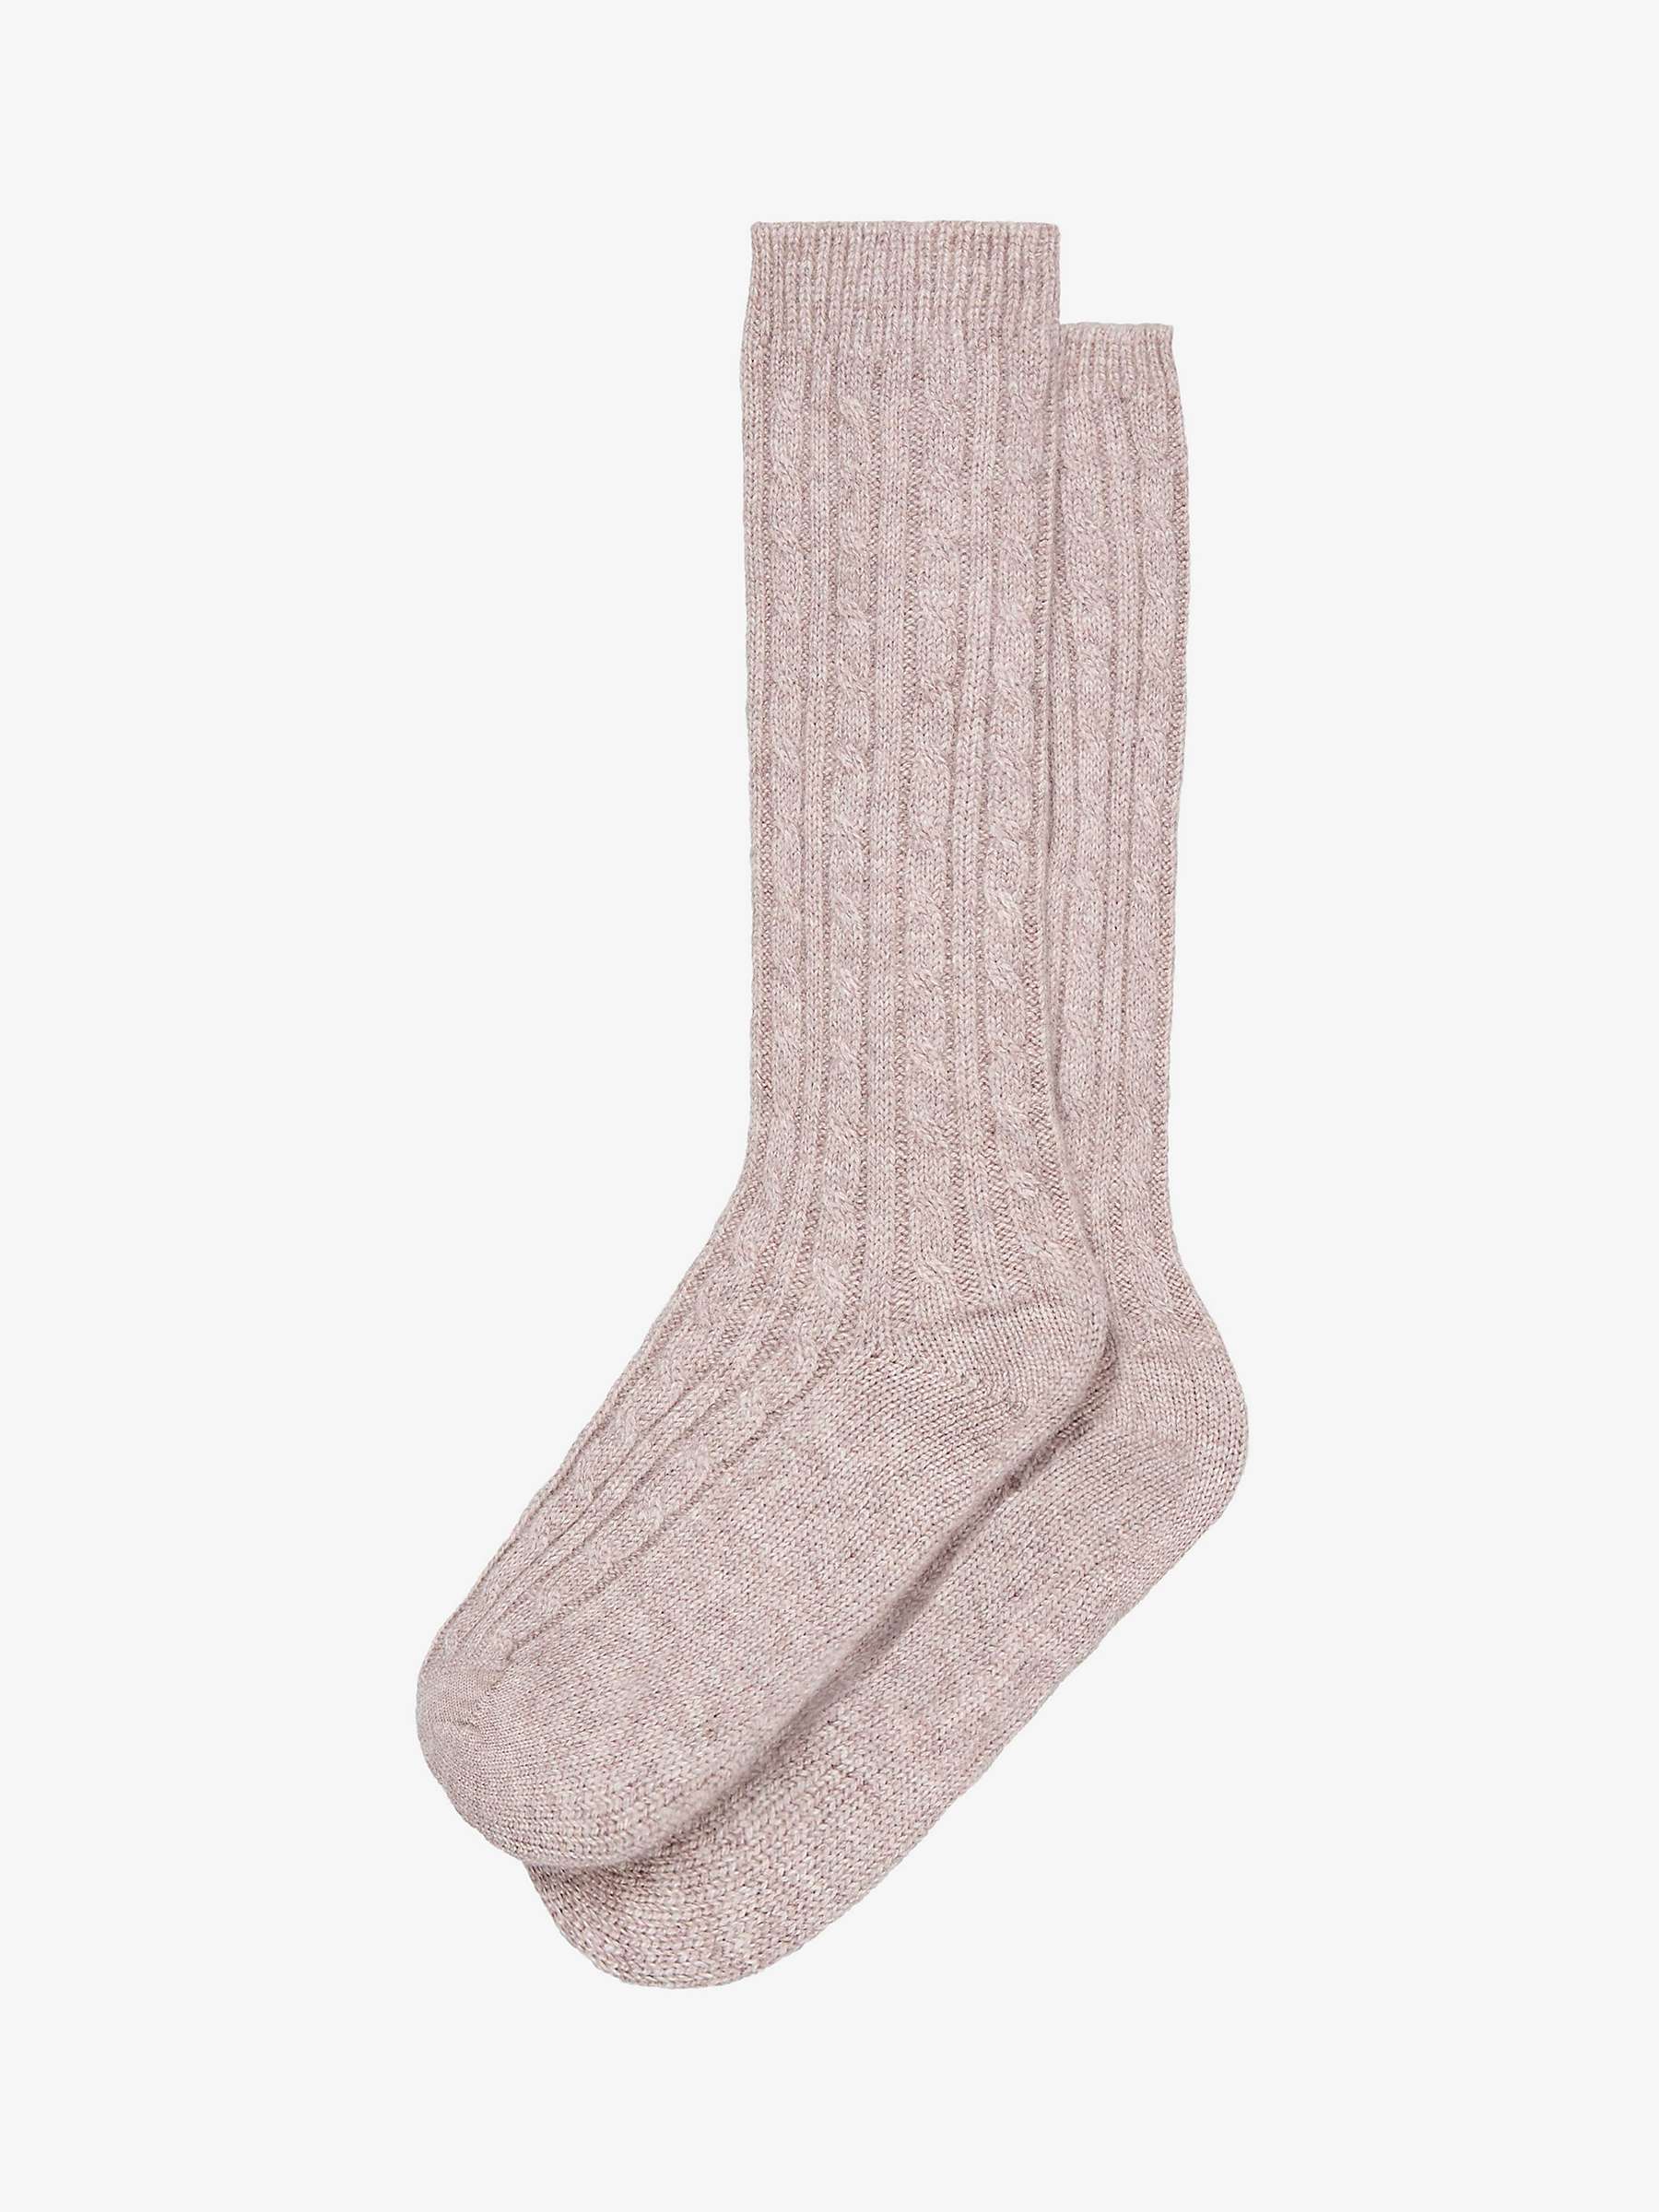 Buy Brora Cashmere Bed Socks Online at johnlewis.com